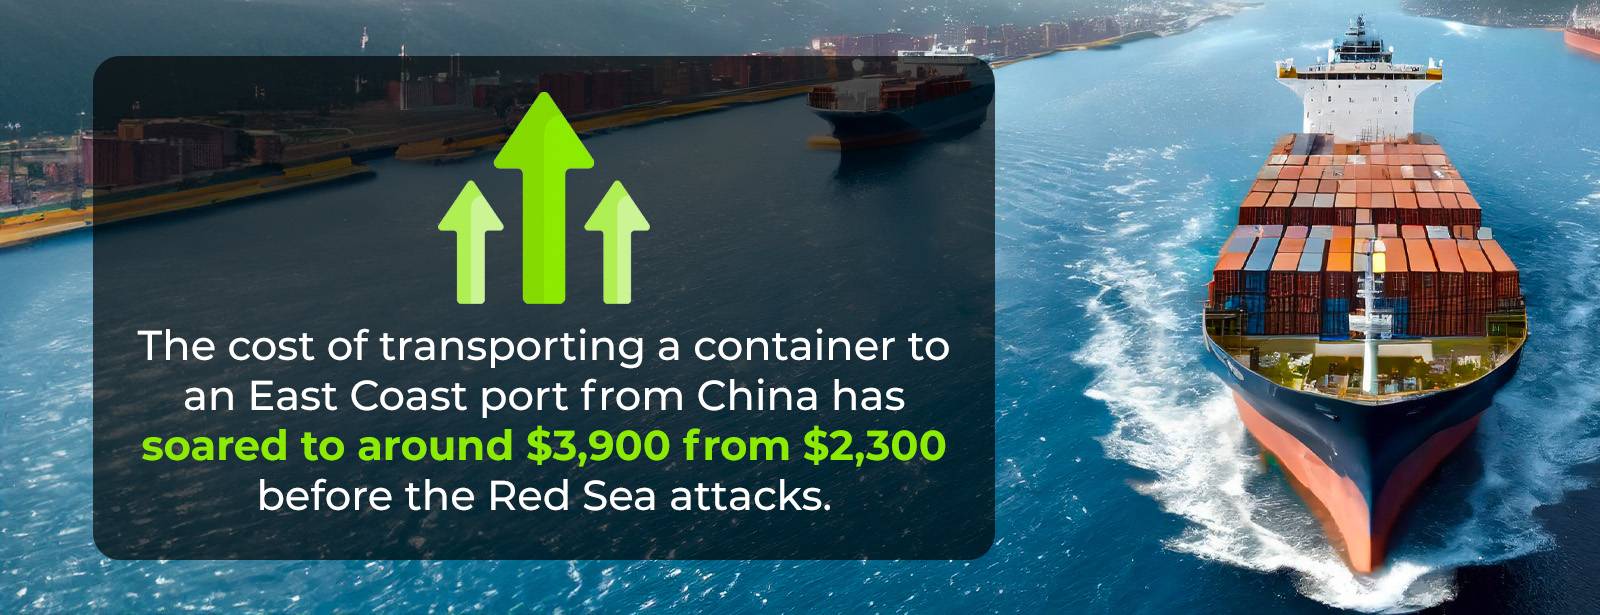 Stroški prevoza kontejnerja preko Rdečega morja se povečajo za 2x.